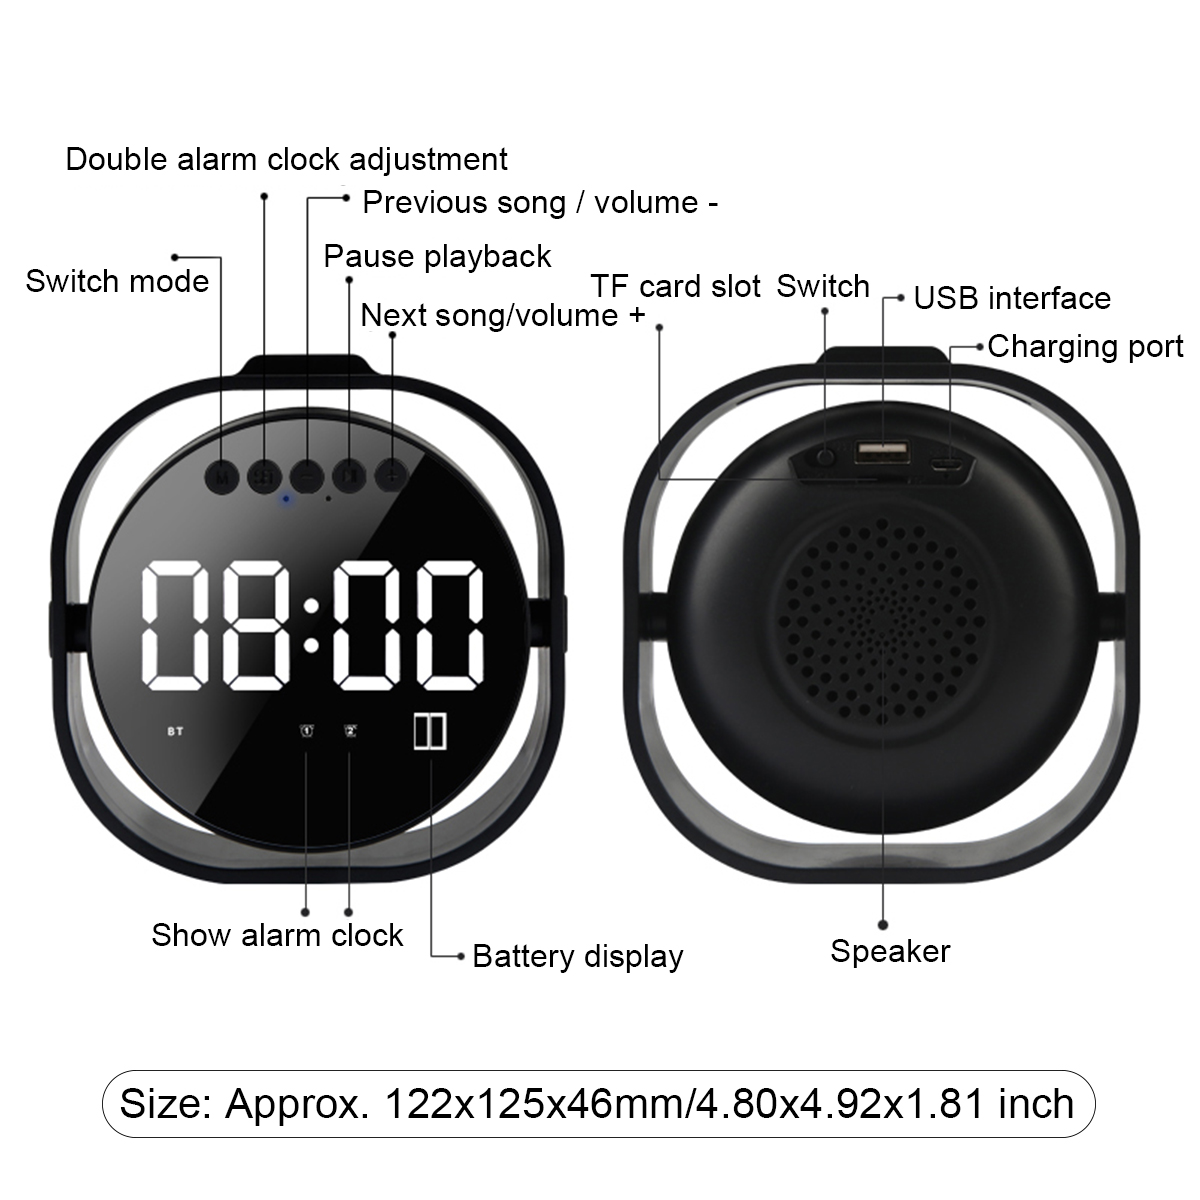 LED-Display-Dual-Alarm-Clock-Dual-Units-Wireless-bluetooth-Bass-Speaker-FM-Radio-USB-Port-Mirror-Spe-1490344-13